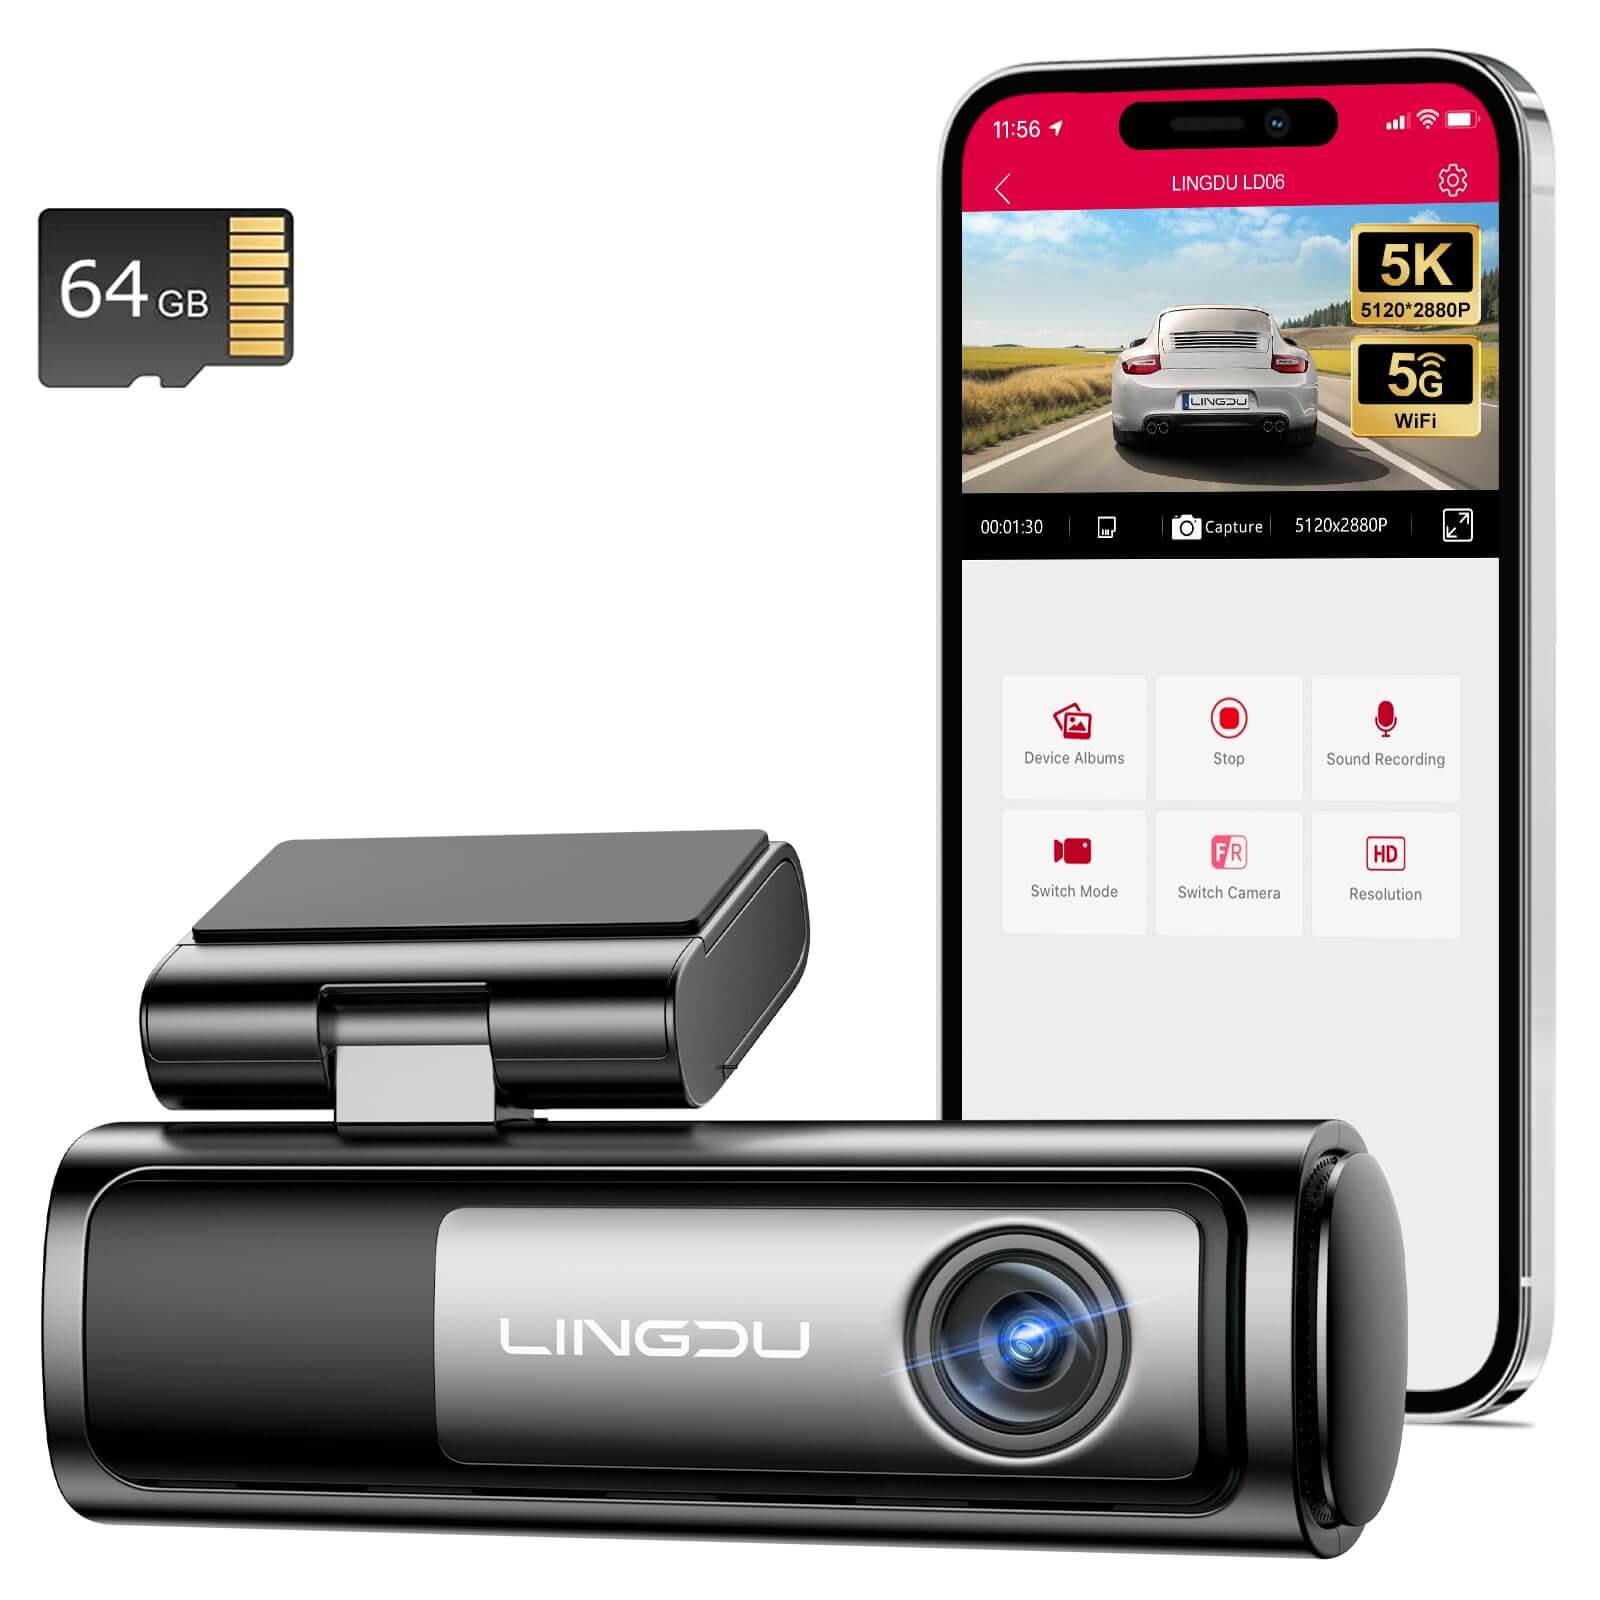 LINGDU LD06 1CH Dash Cam 5K Voice Control 24H Parking Mode No Battery